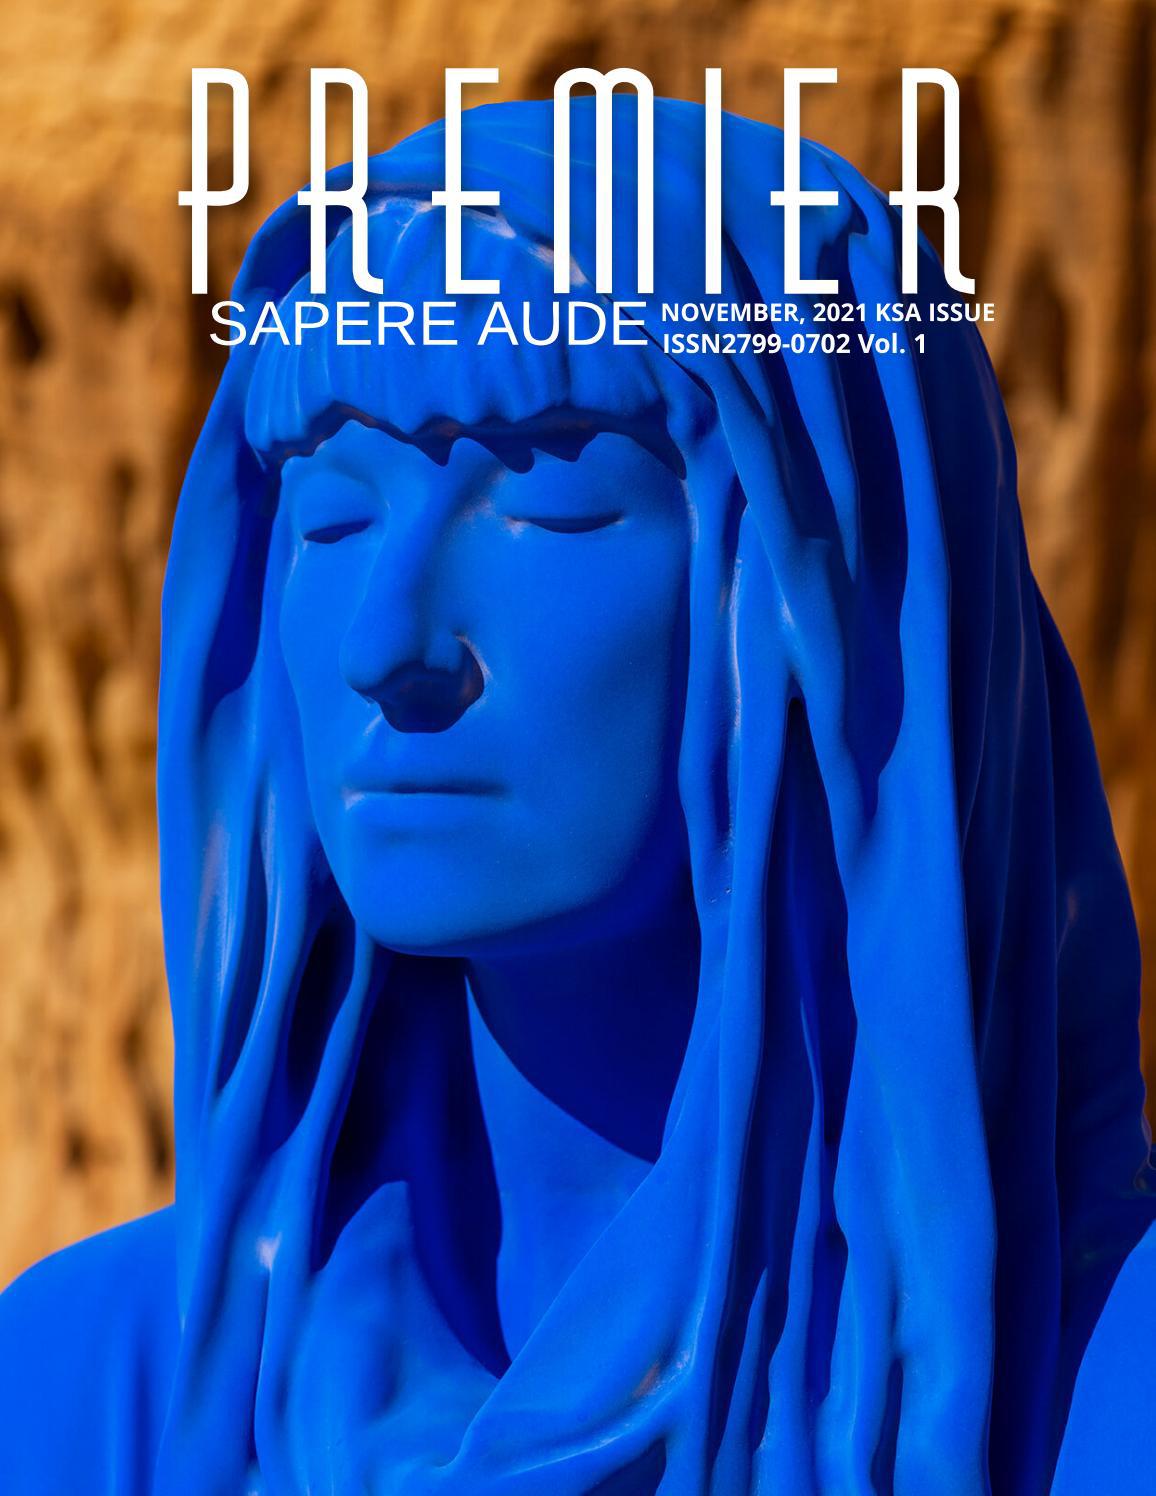 Premier Magazine, November 2021